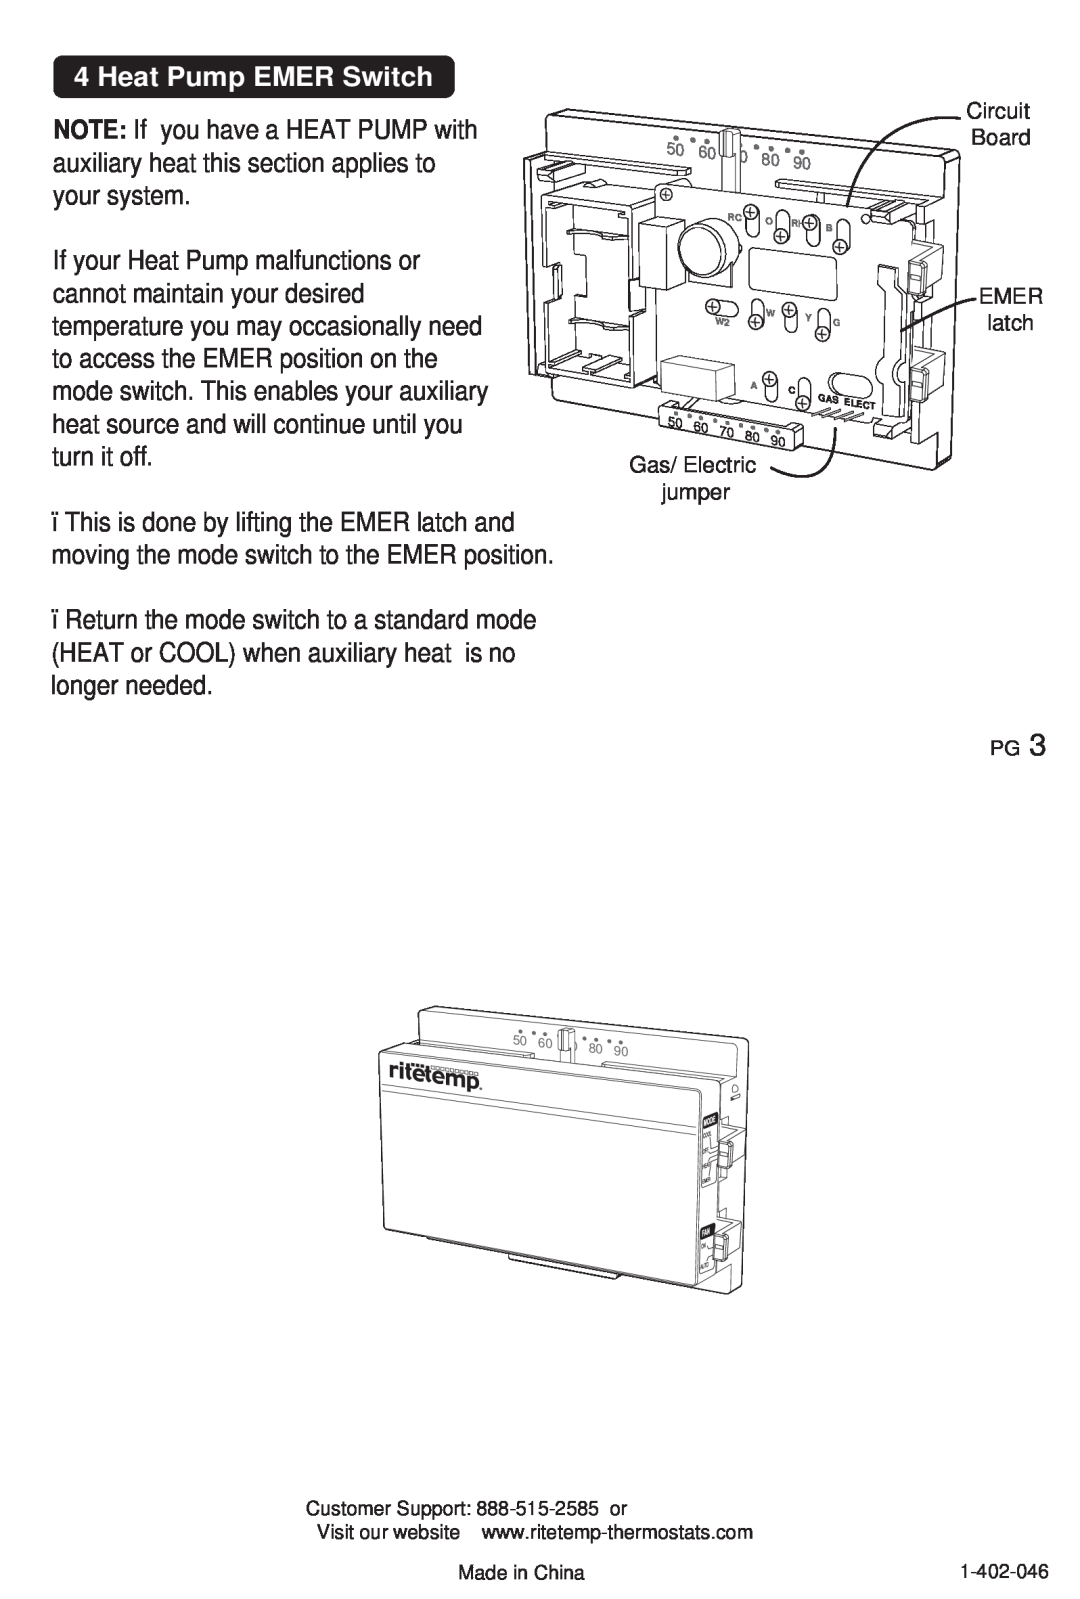 ritetemp GPMG8010 manual Heat Pump EMER Switch, Gas/ Electric jumper, Circuit Board EMER latch 